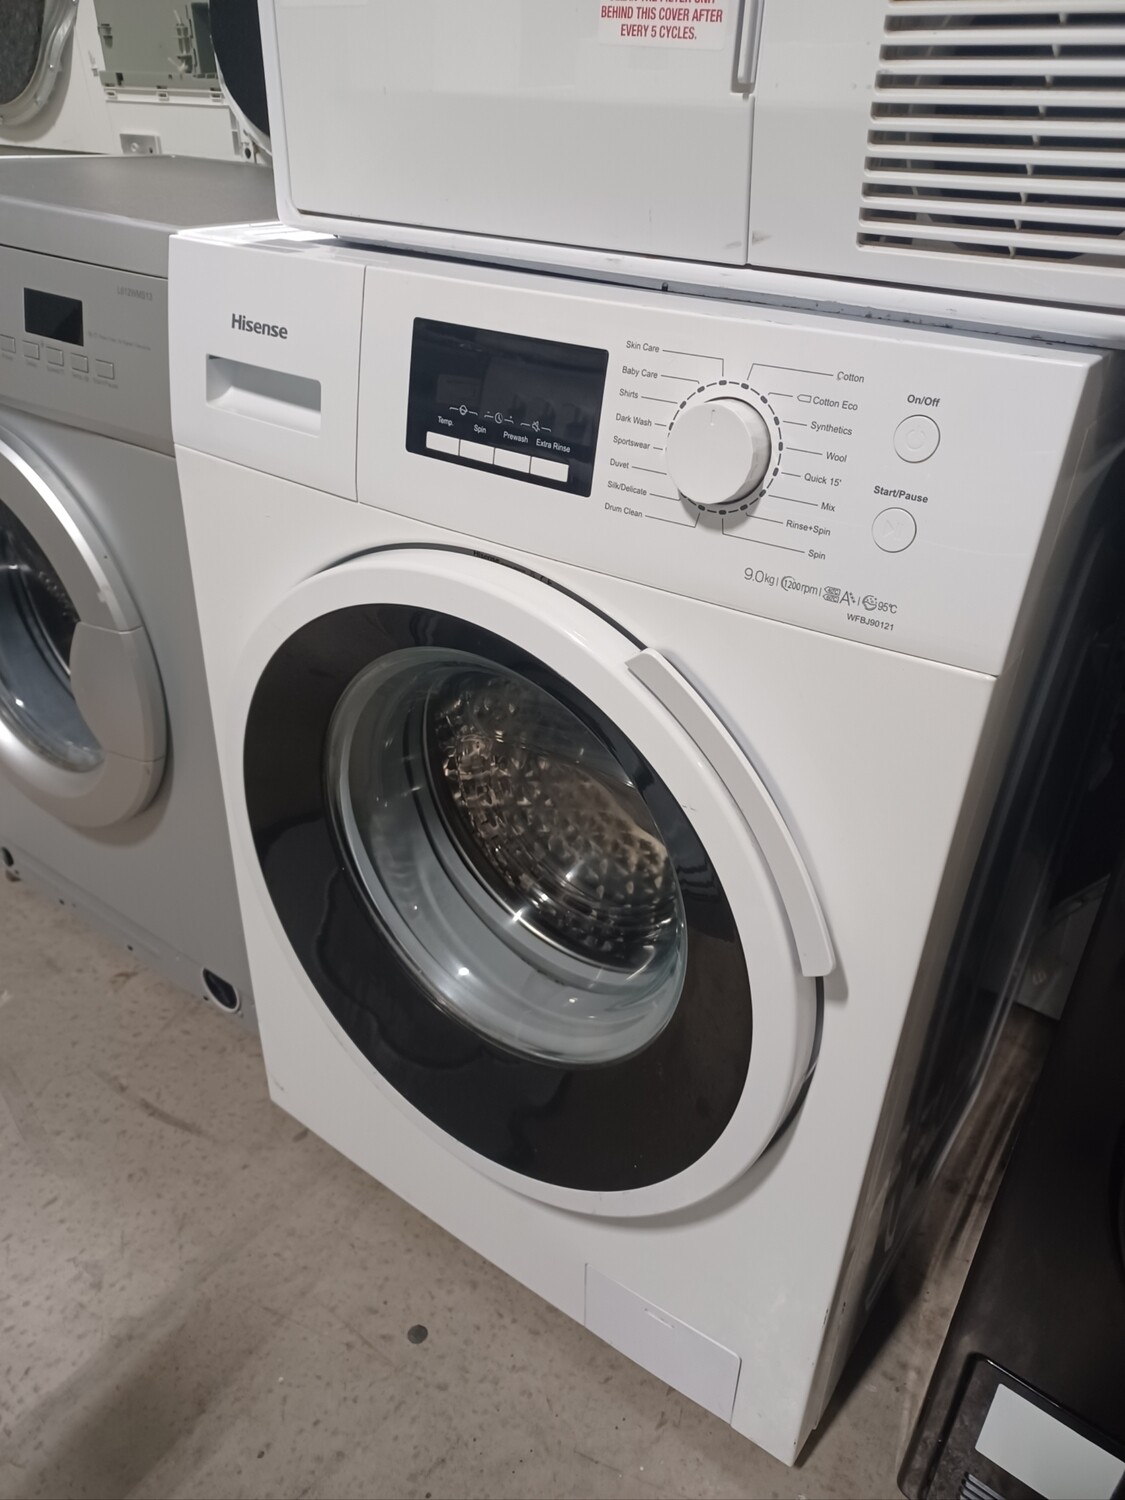 Hisense WFBJ90121 9kg Load, A+++ 1200 Spin Washing Machine - White - Refurbished - 6 Month Guarantee